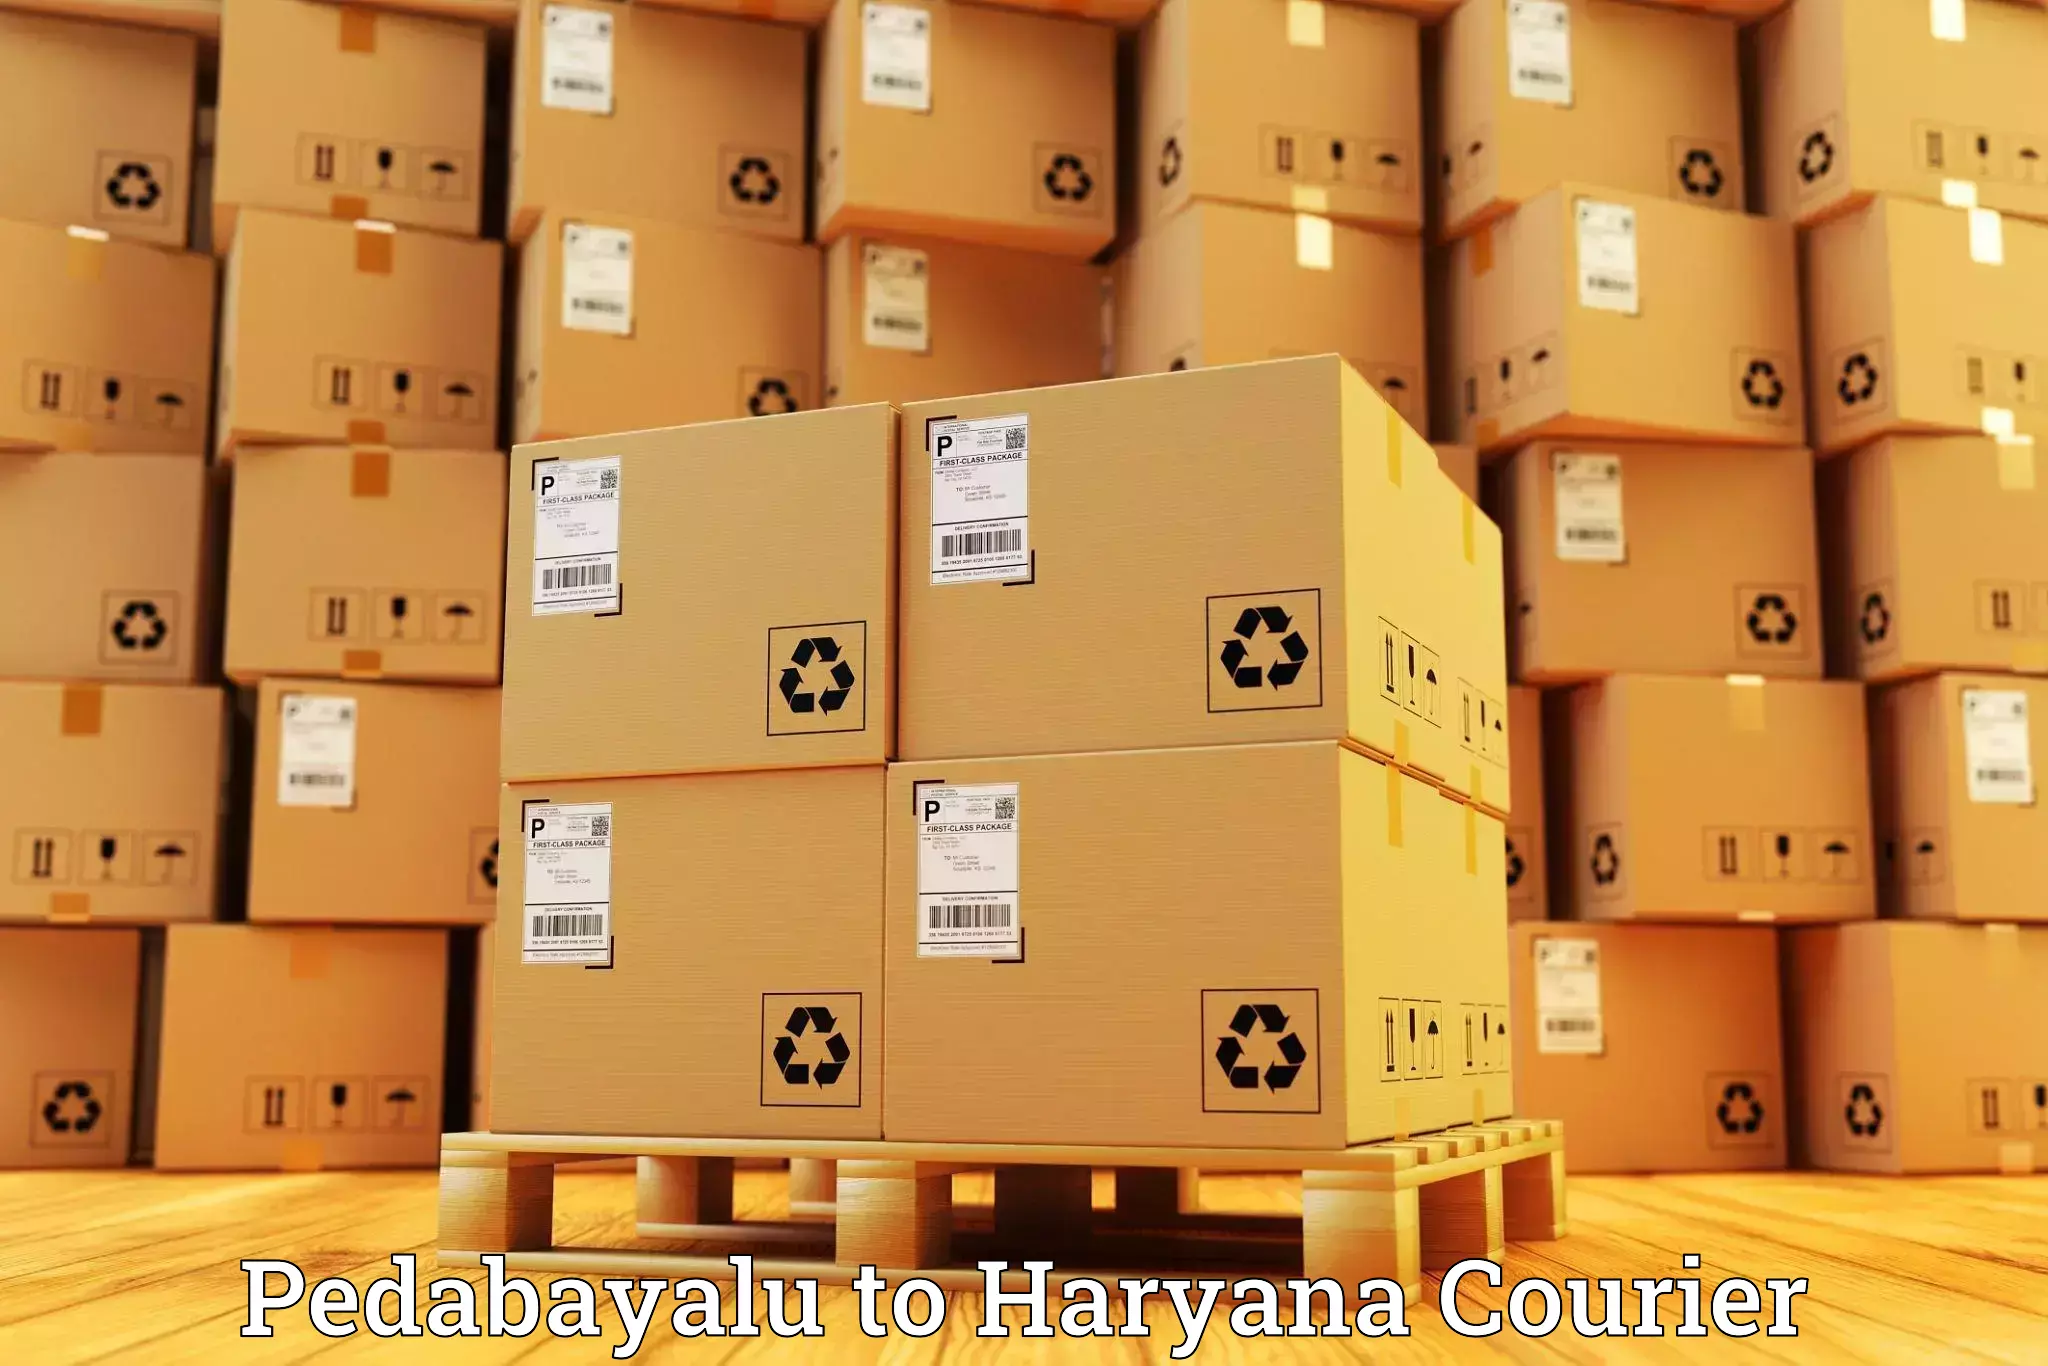 Global logistics network in Pedabayalu to Bhuna